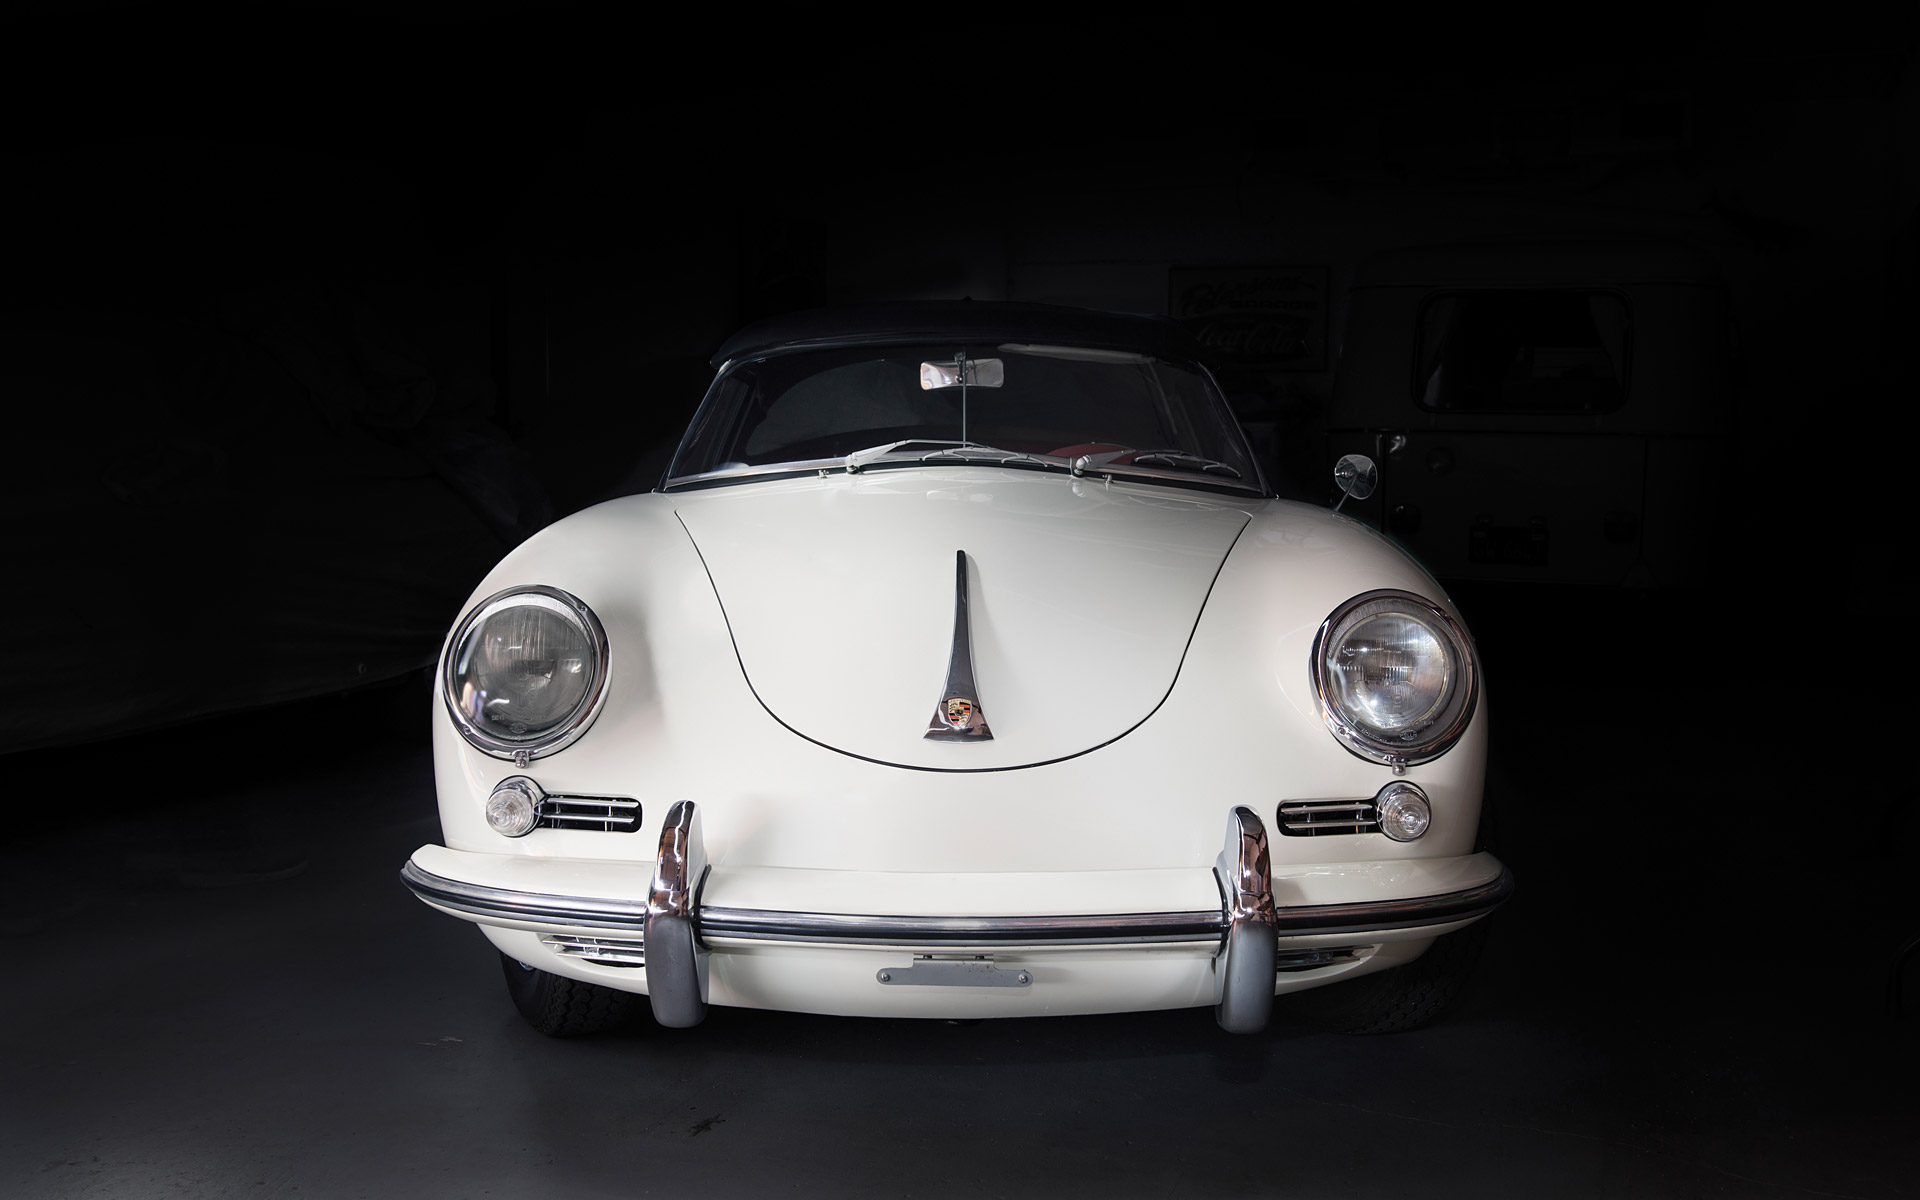  1959 Porsche 356B Wallpaper.